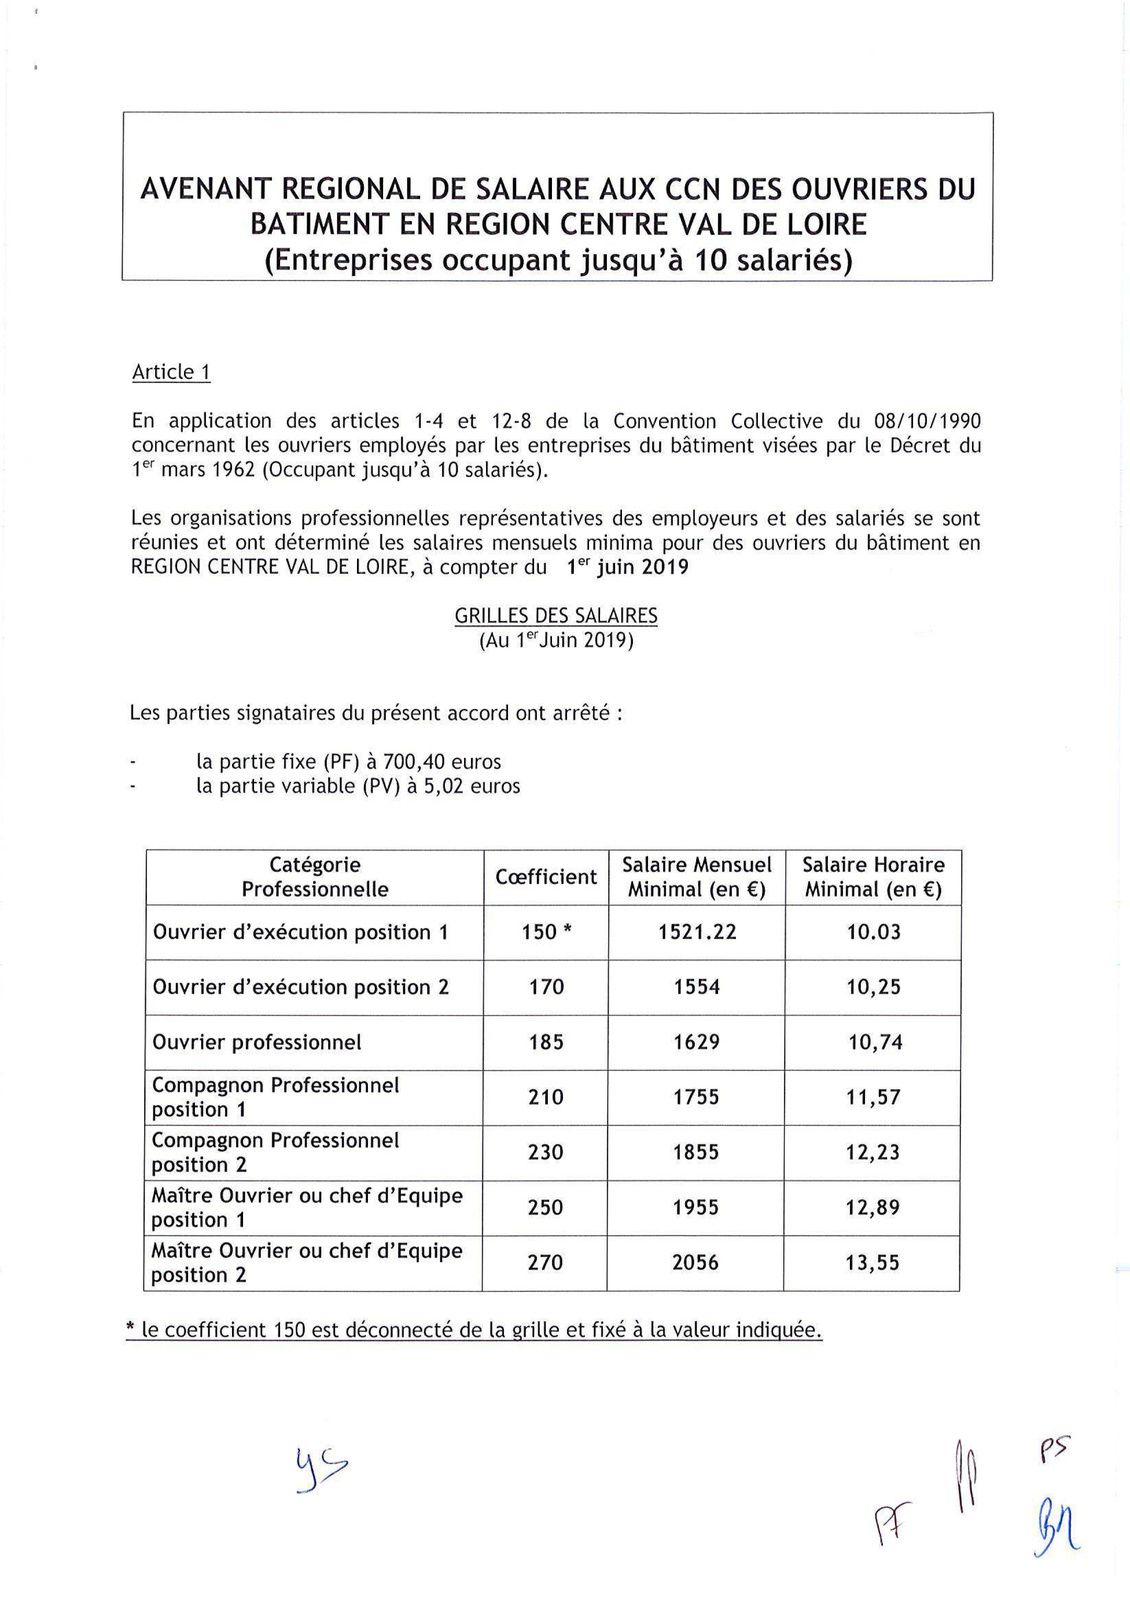 Le salaires des ouvriers Centre-Val de Loire - CNC BÂTIMENT CFDT